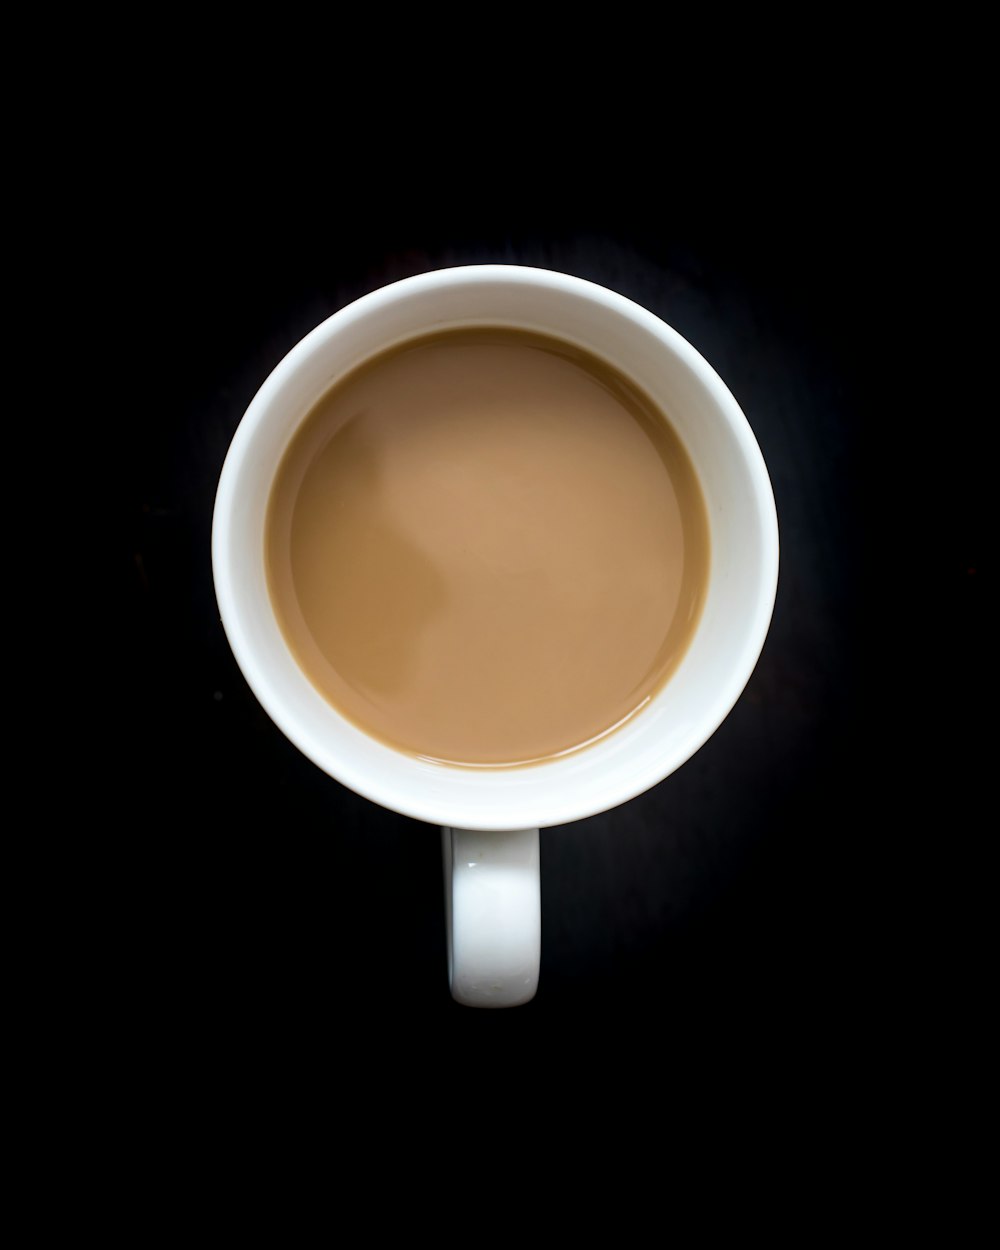 brown liquid in white ceramic mug